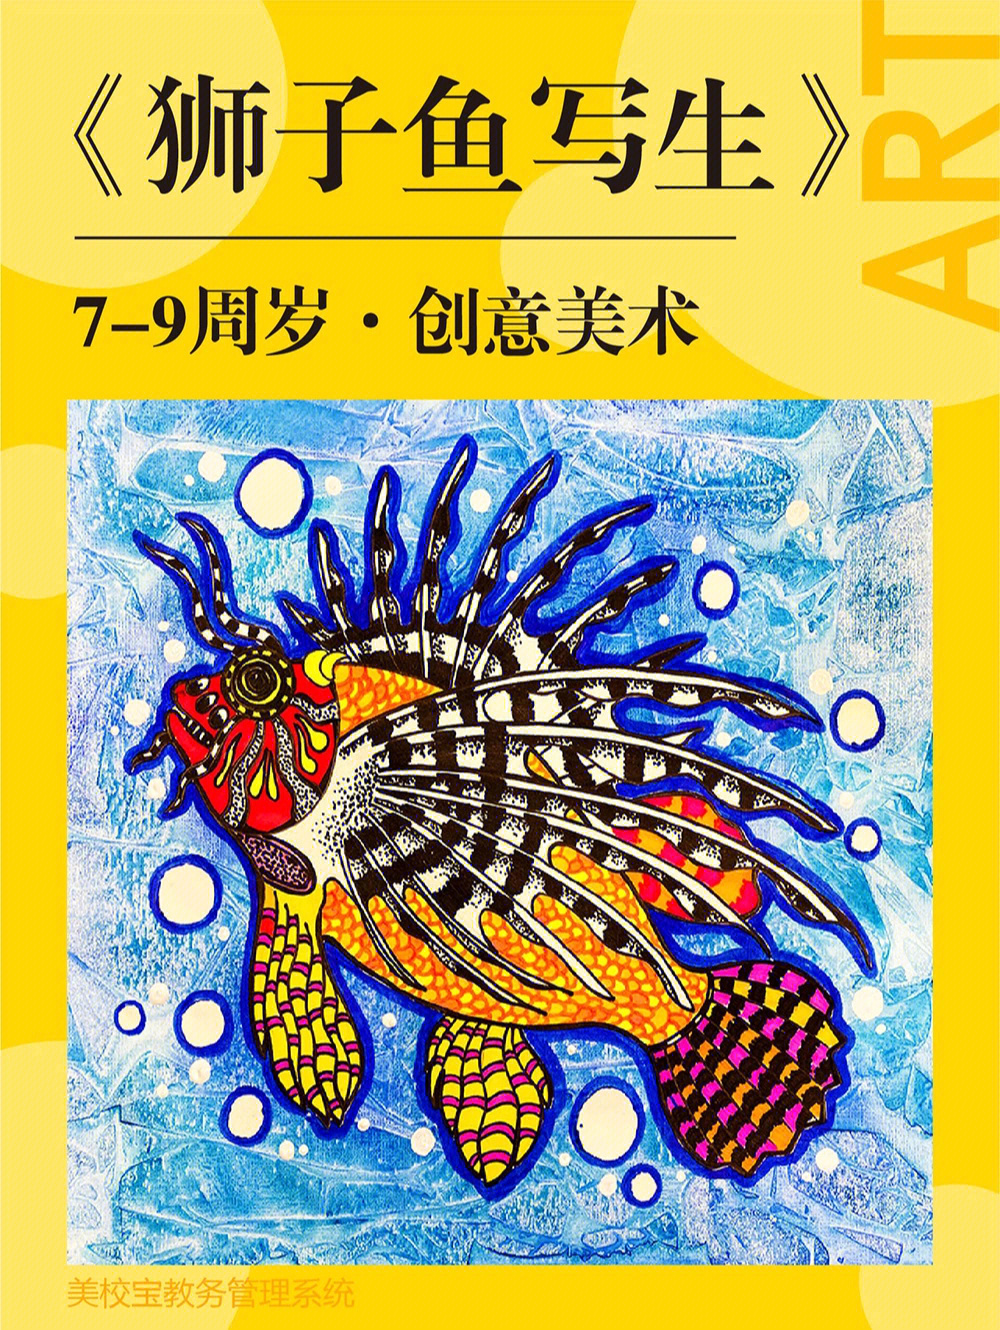 创意美术儿童画狮子鱼